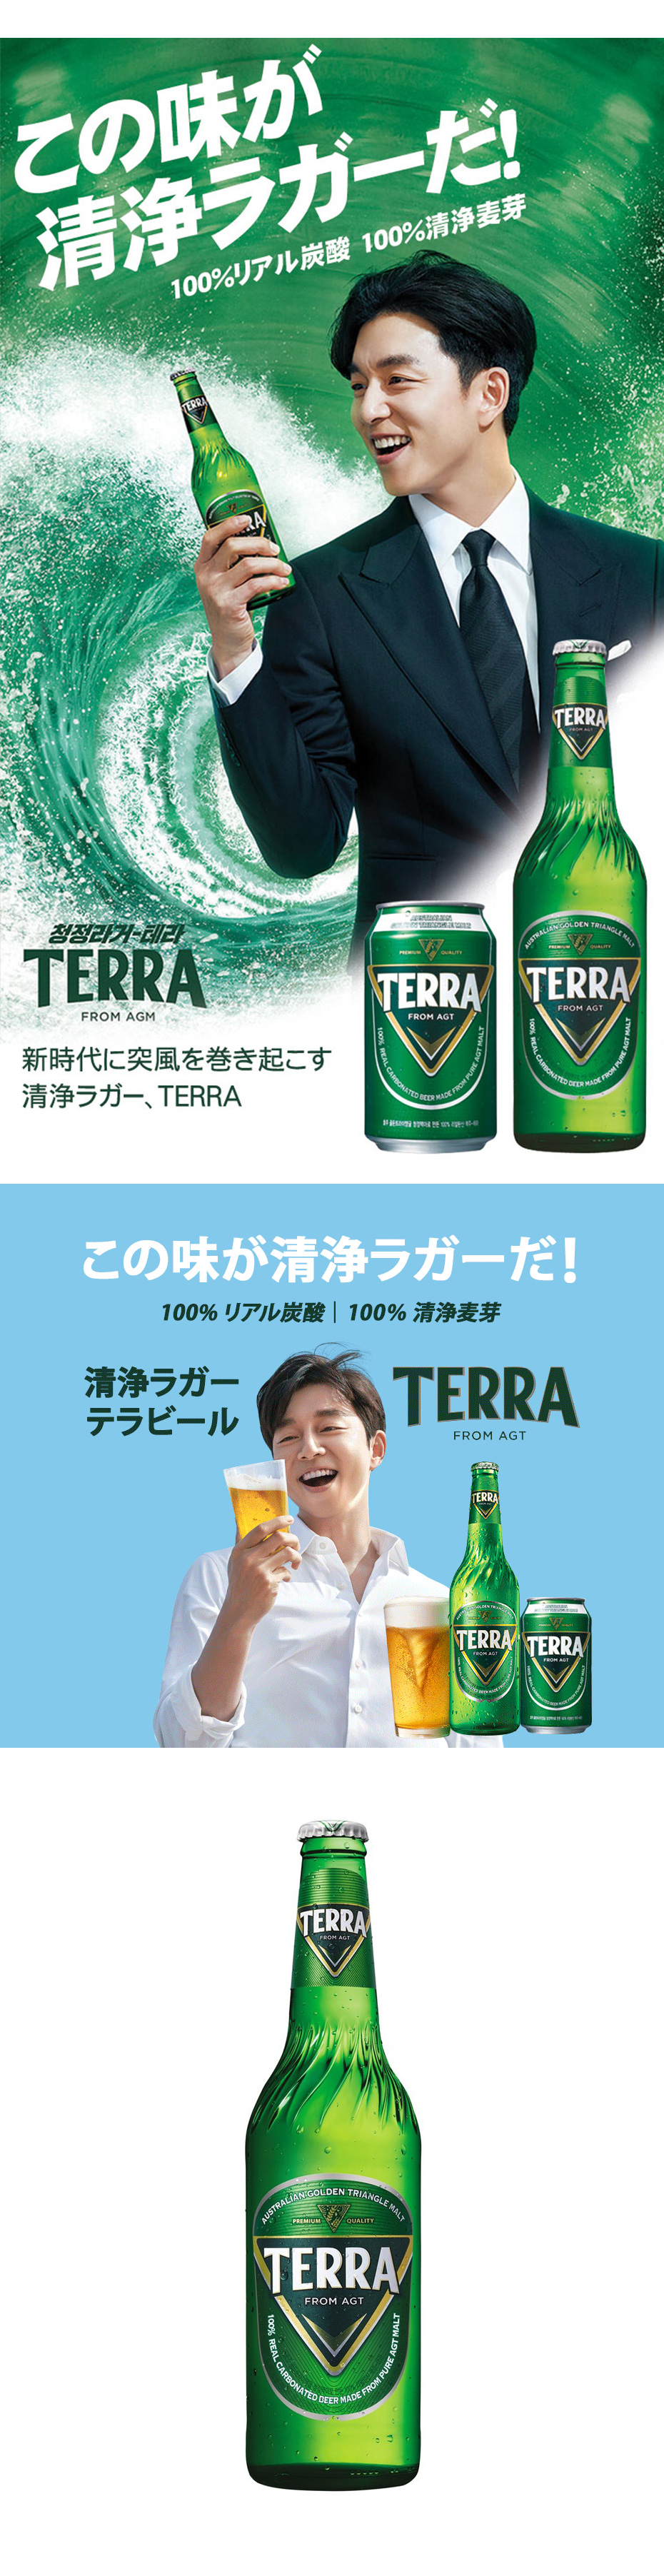 テラビール / 瓶ビール・500ml